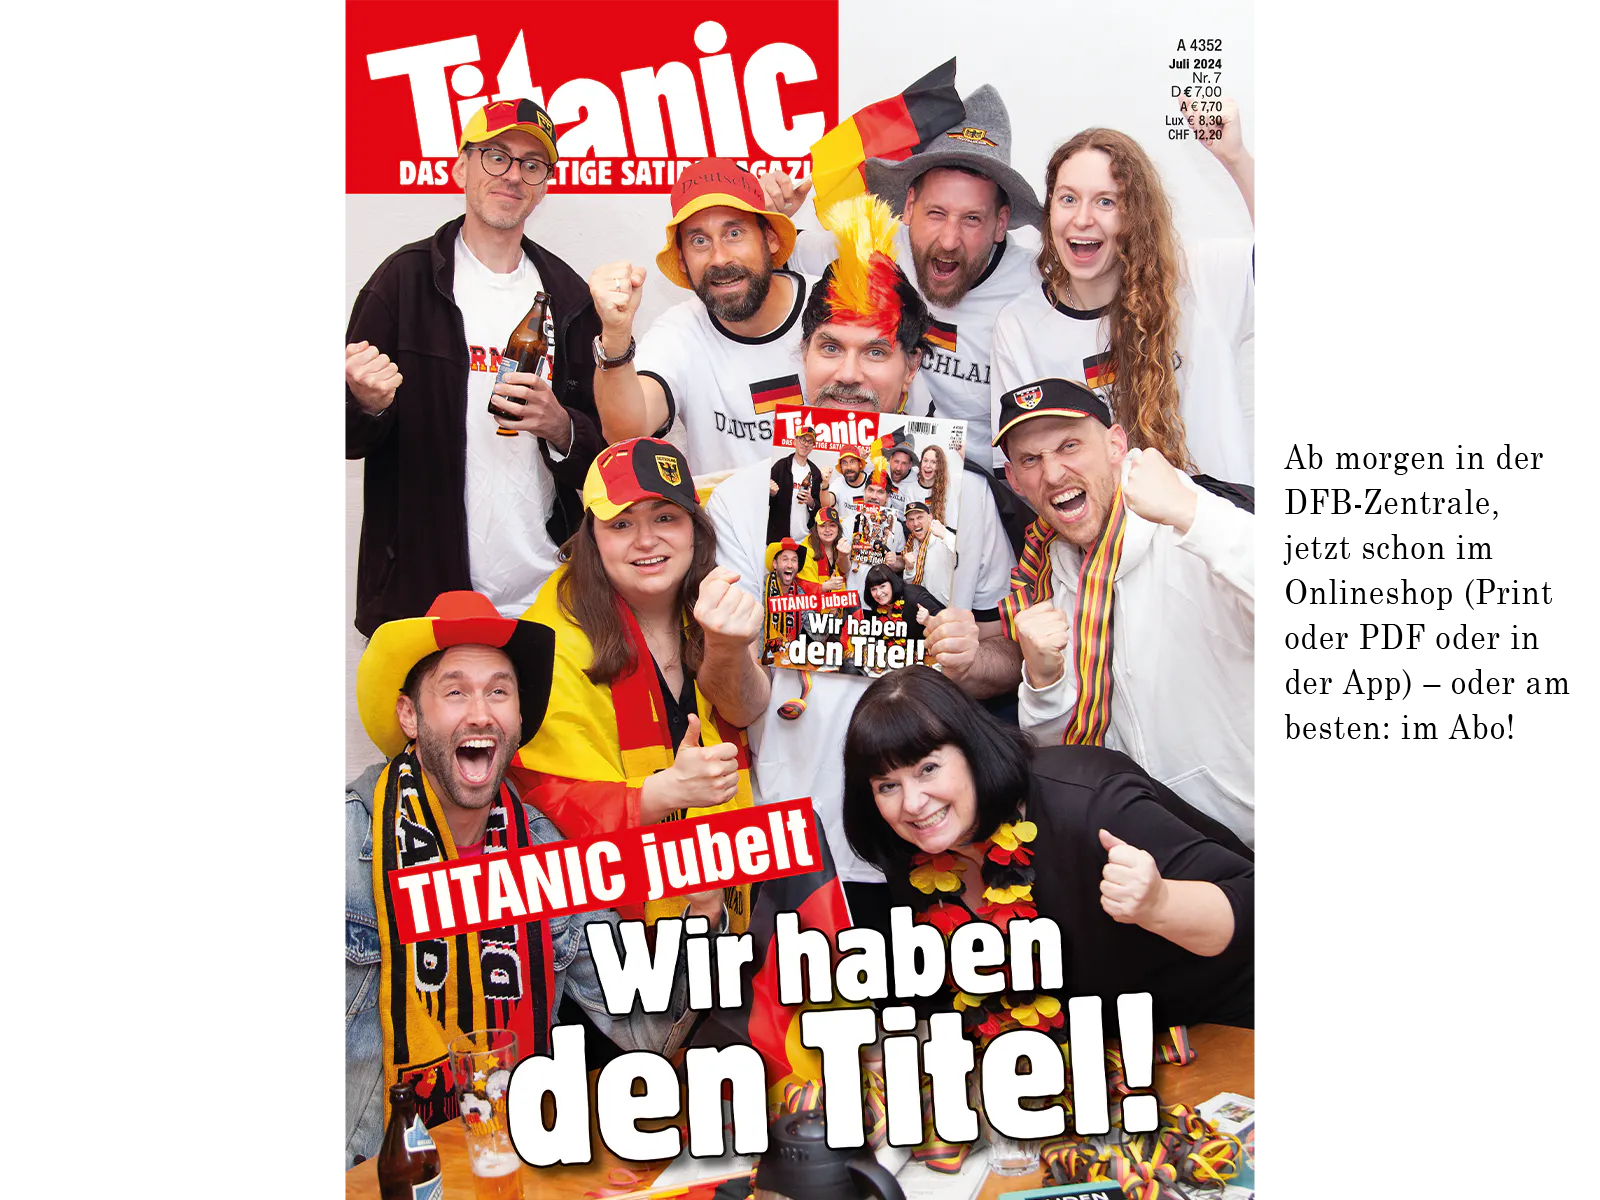 Die Fotografie zeigt die TITANIC-Redaktion, die Deutschland-Merch trägt und sehr euphorisch schaut. Ein Mann in der Mitte mit einer schwarz-rot-goldenen Perücke hält dieses Foto hoch, das sich so wiederholt, darunter der Text: »Titanic jubelt. Wir haben den Titel!«